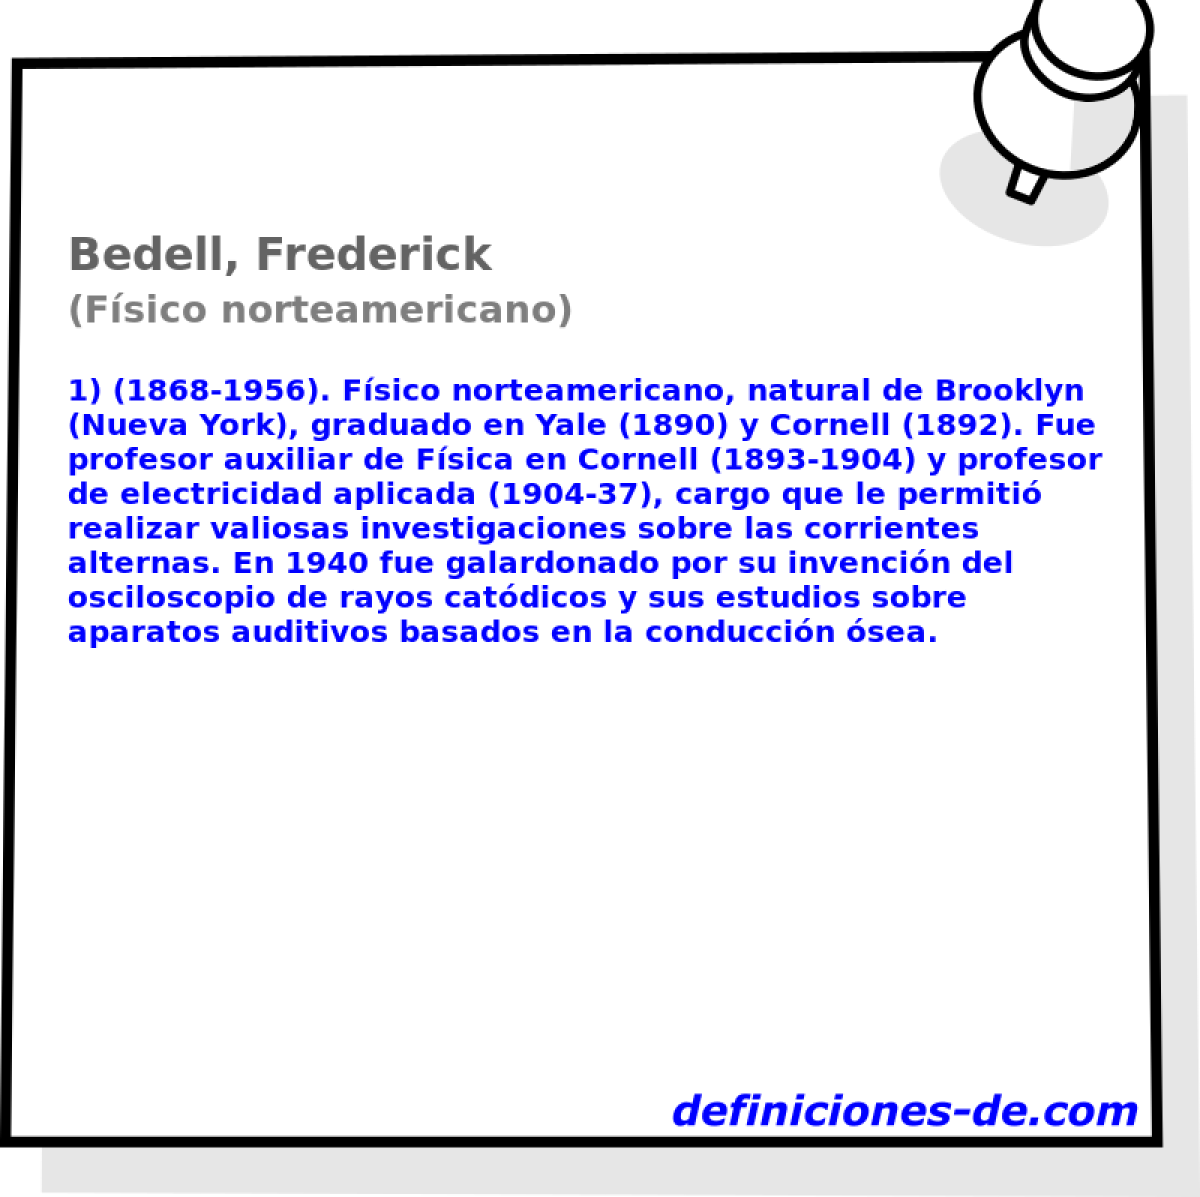 Bedell, Frederick (Fsico norteamericano)